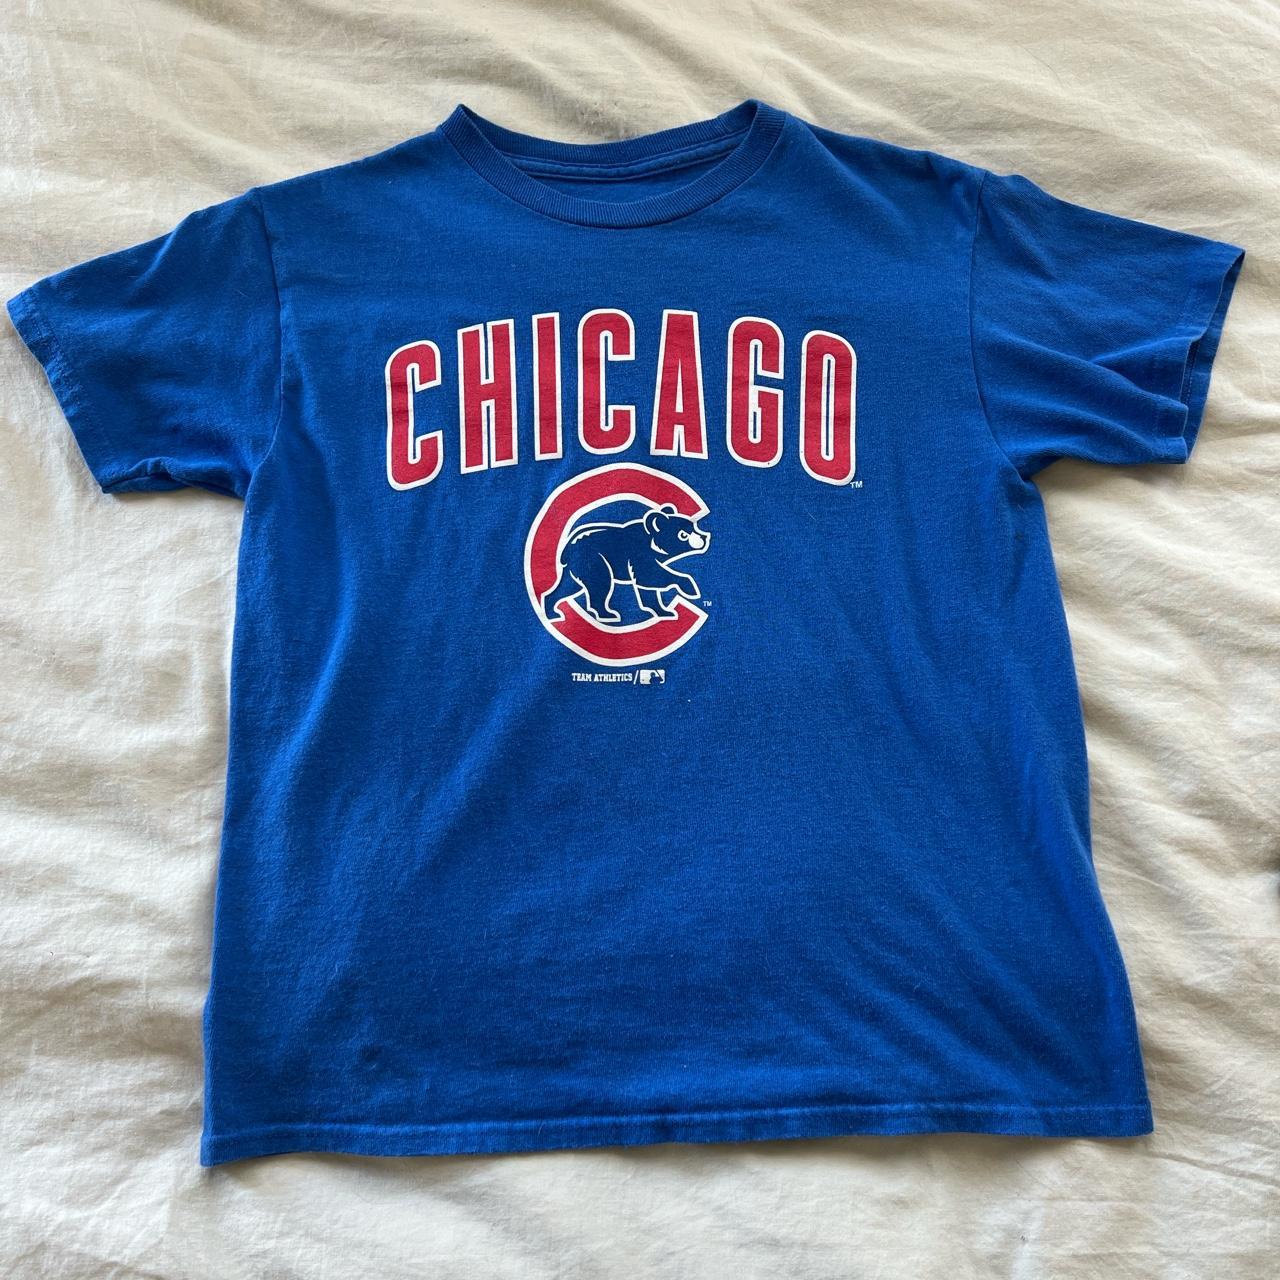 cute women's chicago bears shirts